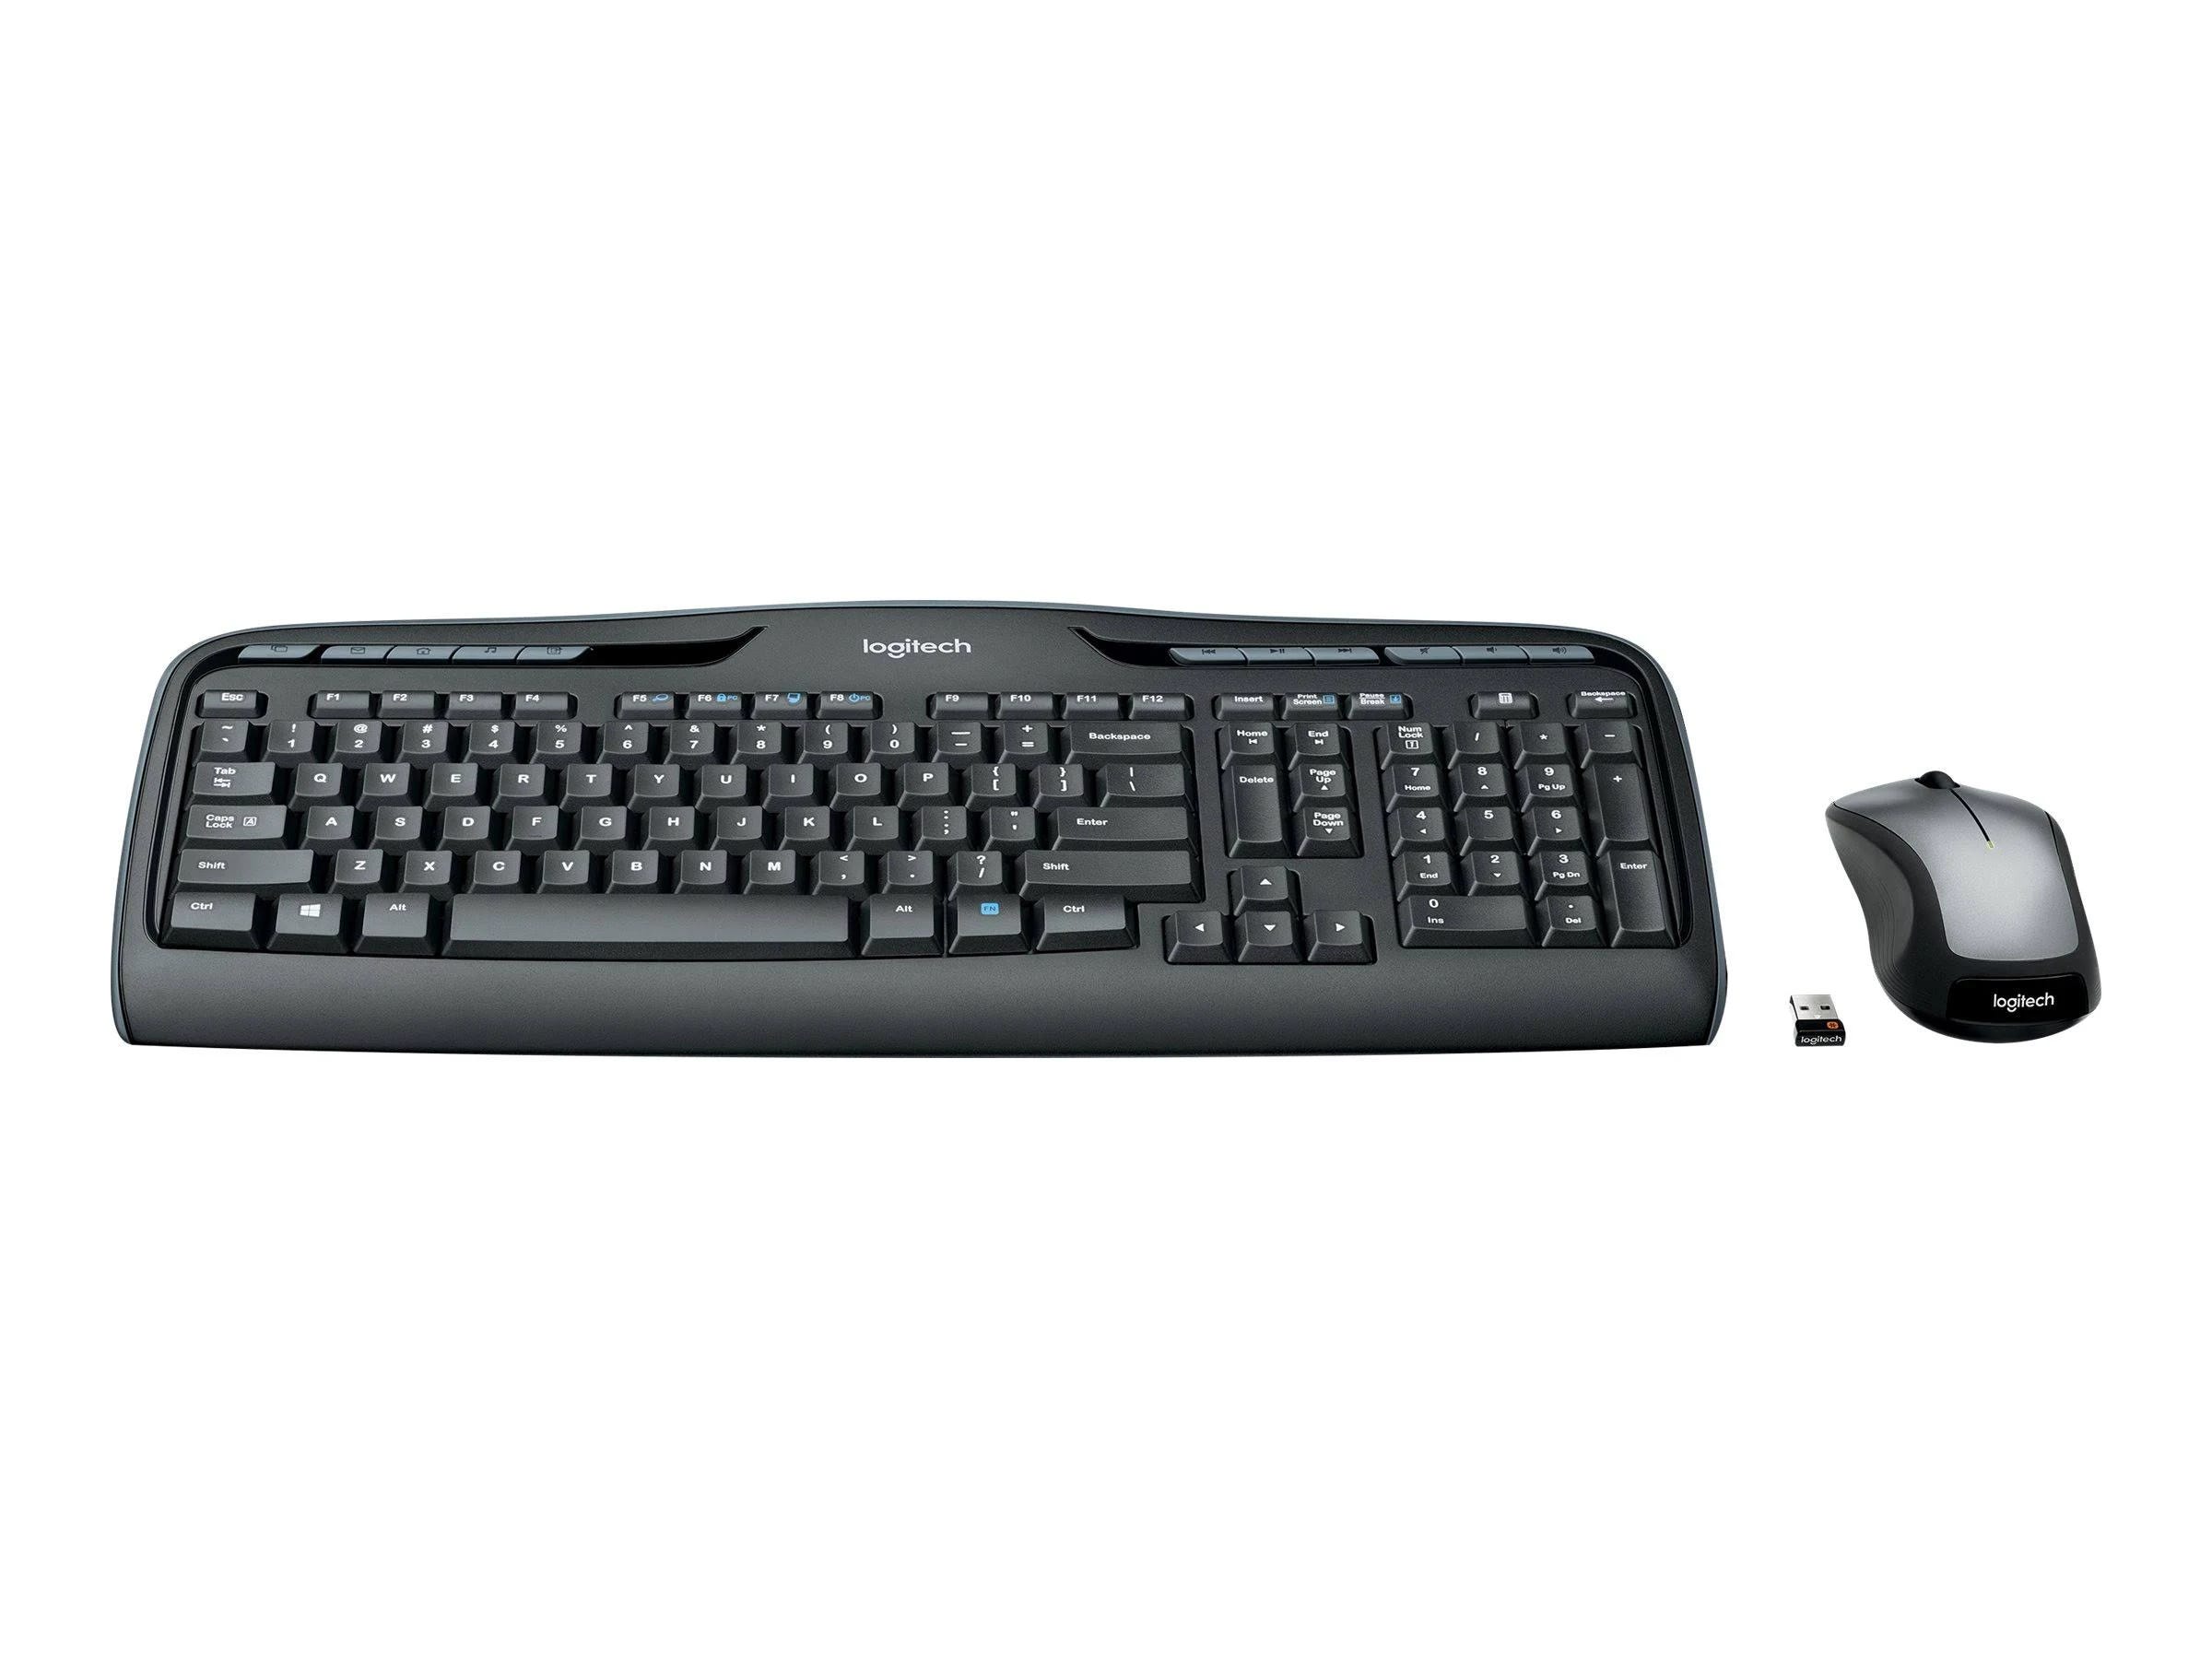 Logitech Wireless Keyboard & Mouse Combo - Mk335: Sleek & Portable Keyboard & Mouse Set for Comfortable Typing | Image